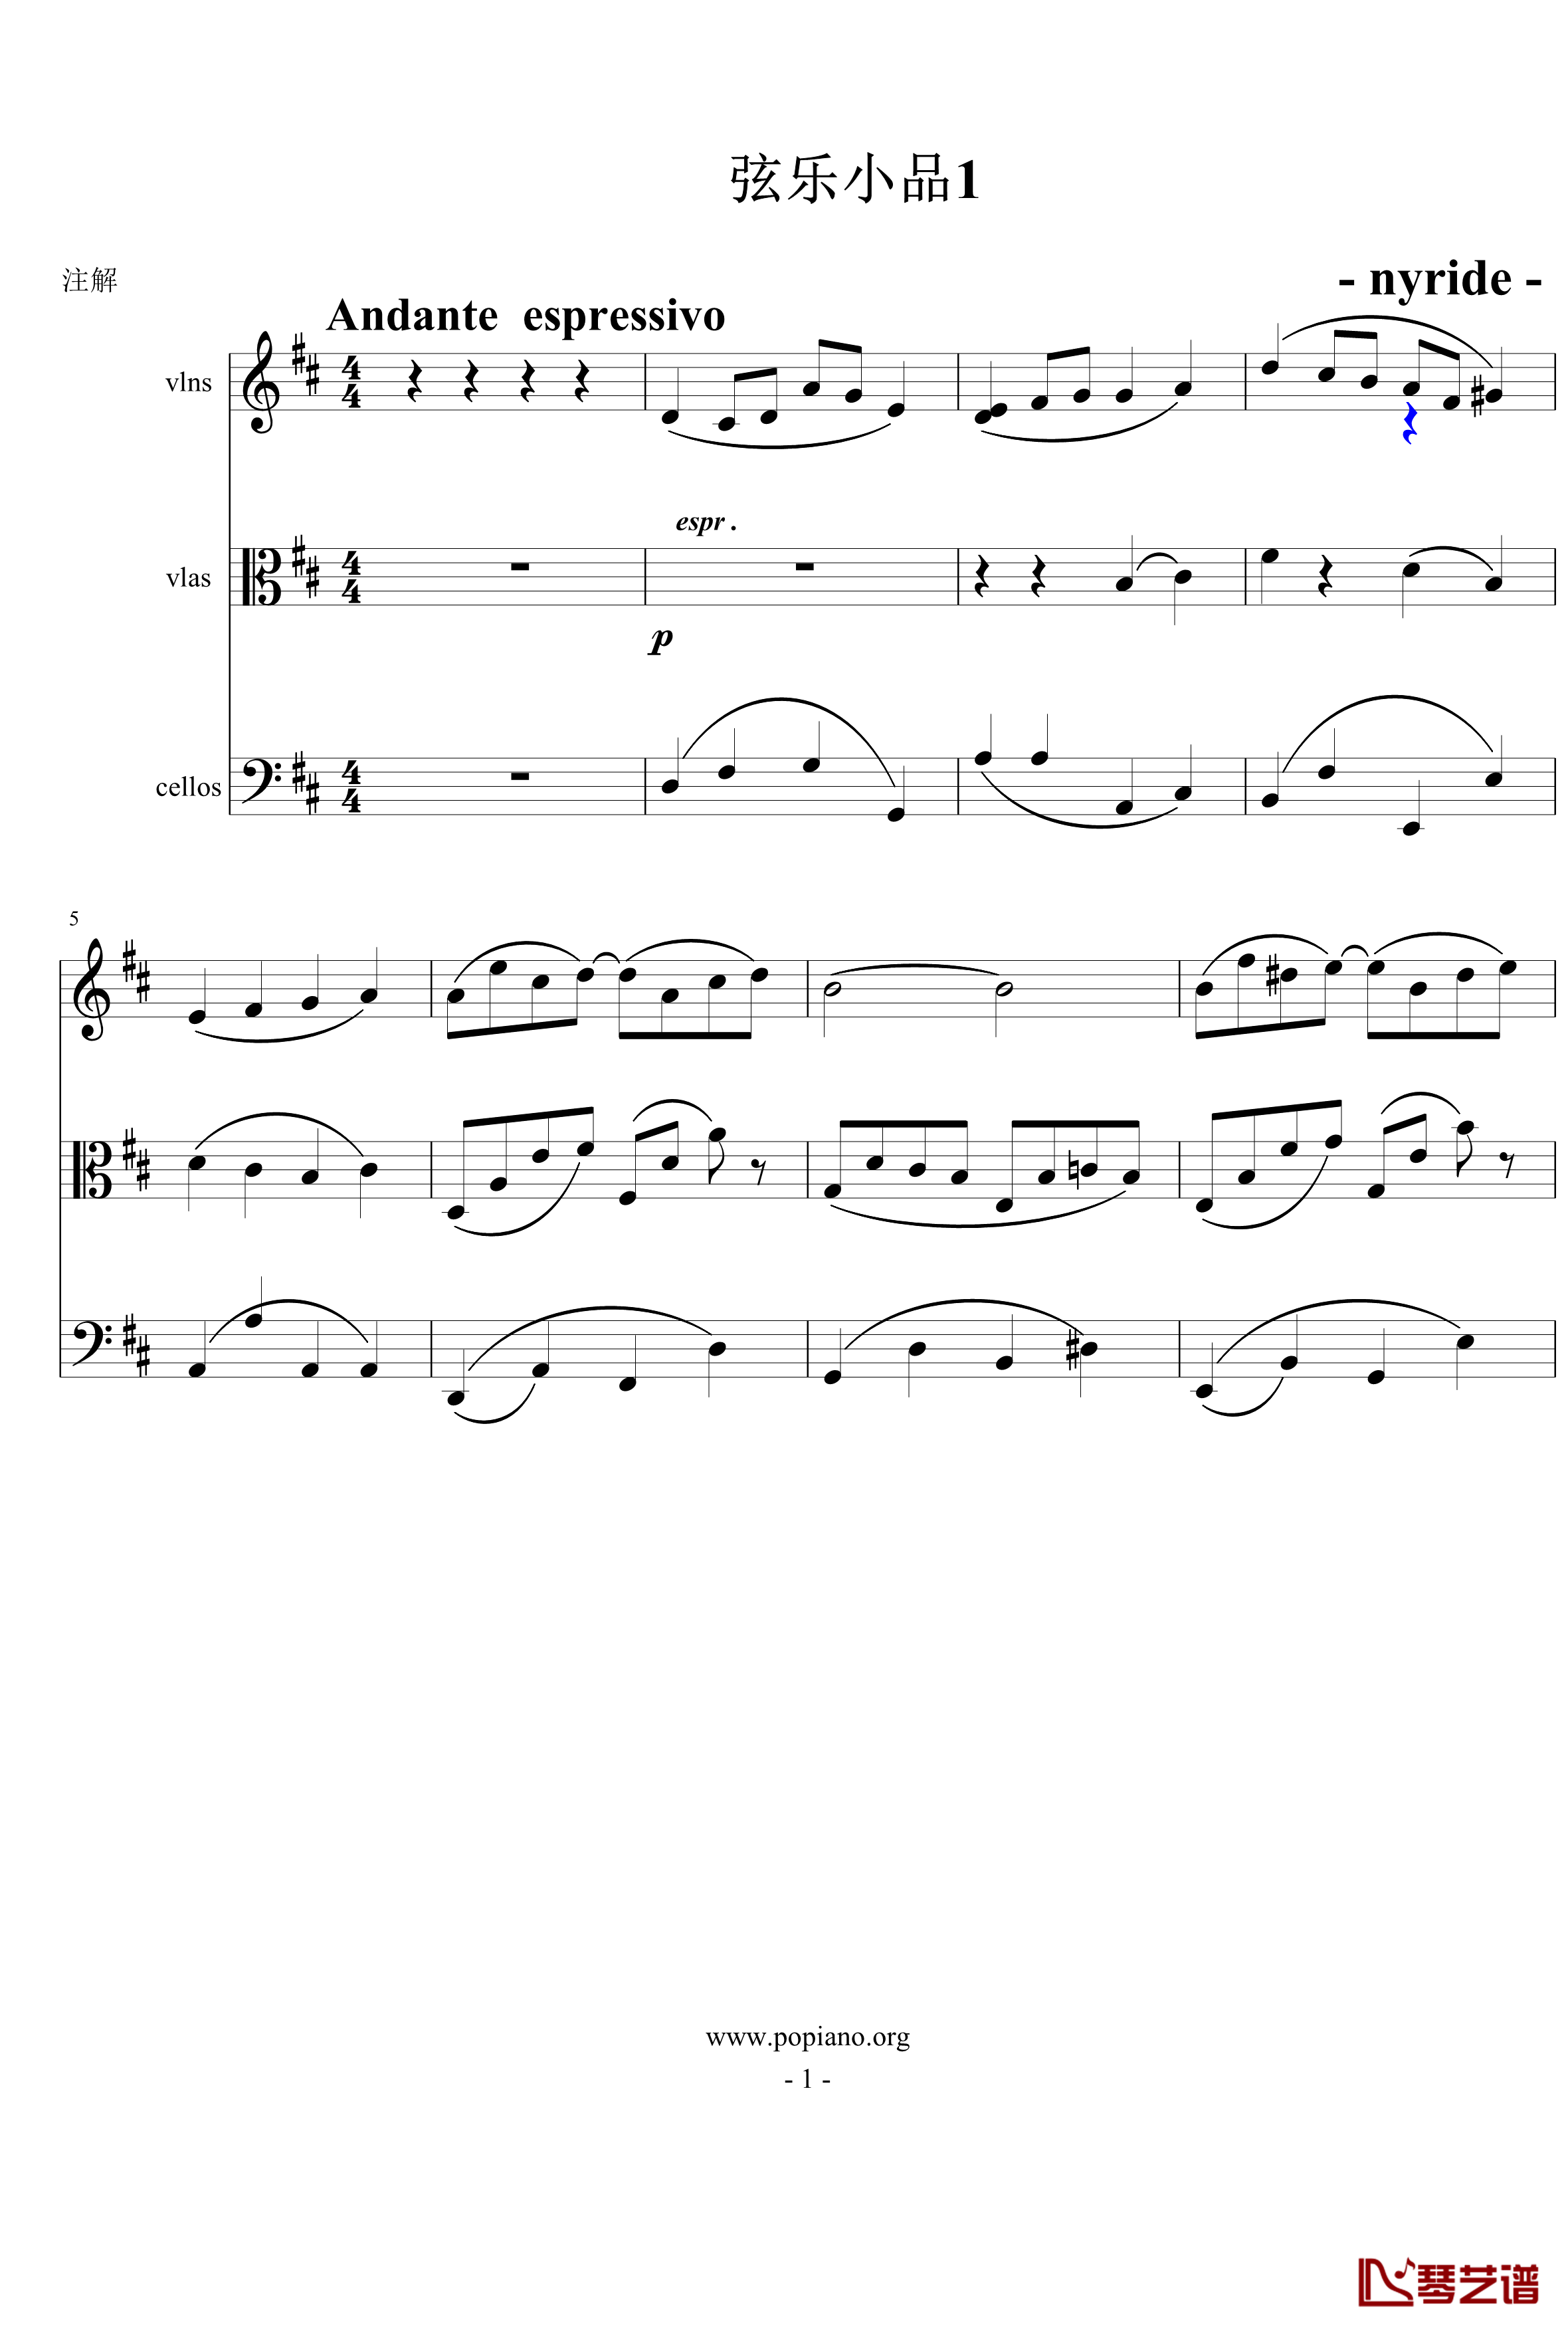 弦乐小品钢琴谱-nyride-D大调